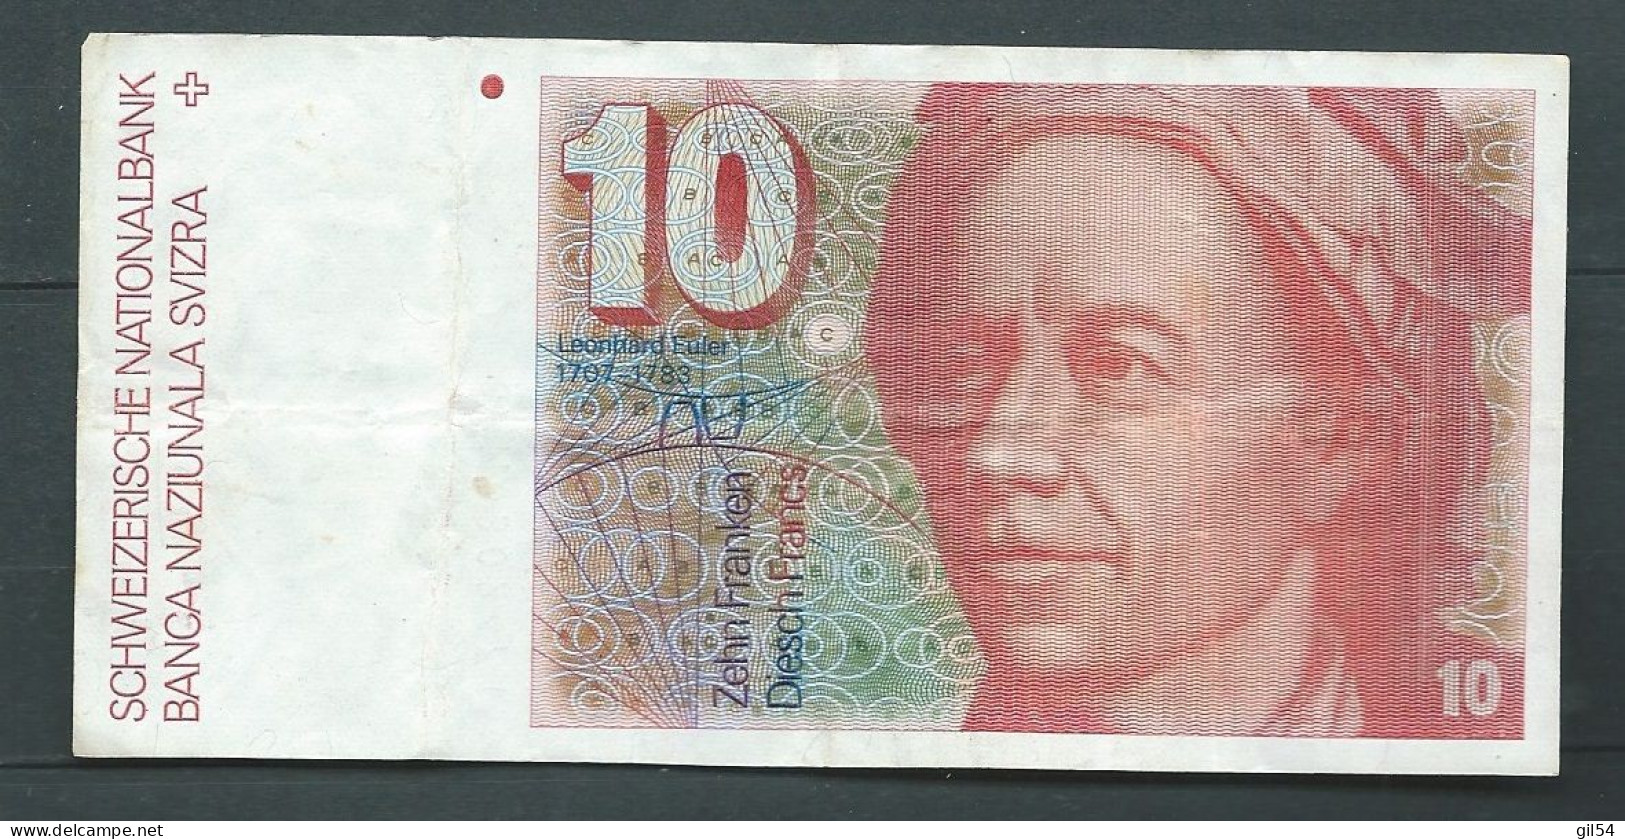 Billet 10 Francs 1987 Svizzera Suisse Schweiz 80M0302471  --  Laura14328 - Zwitserland